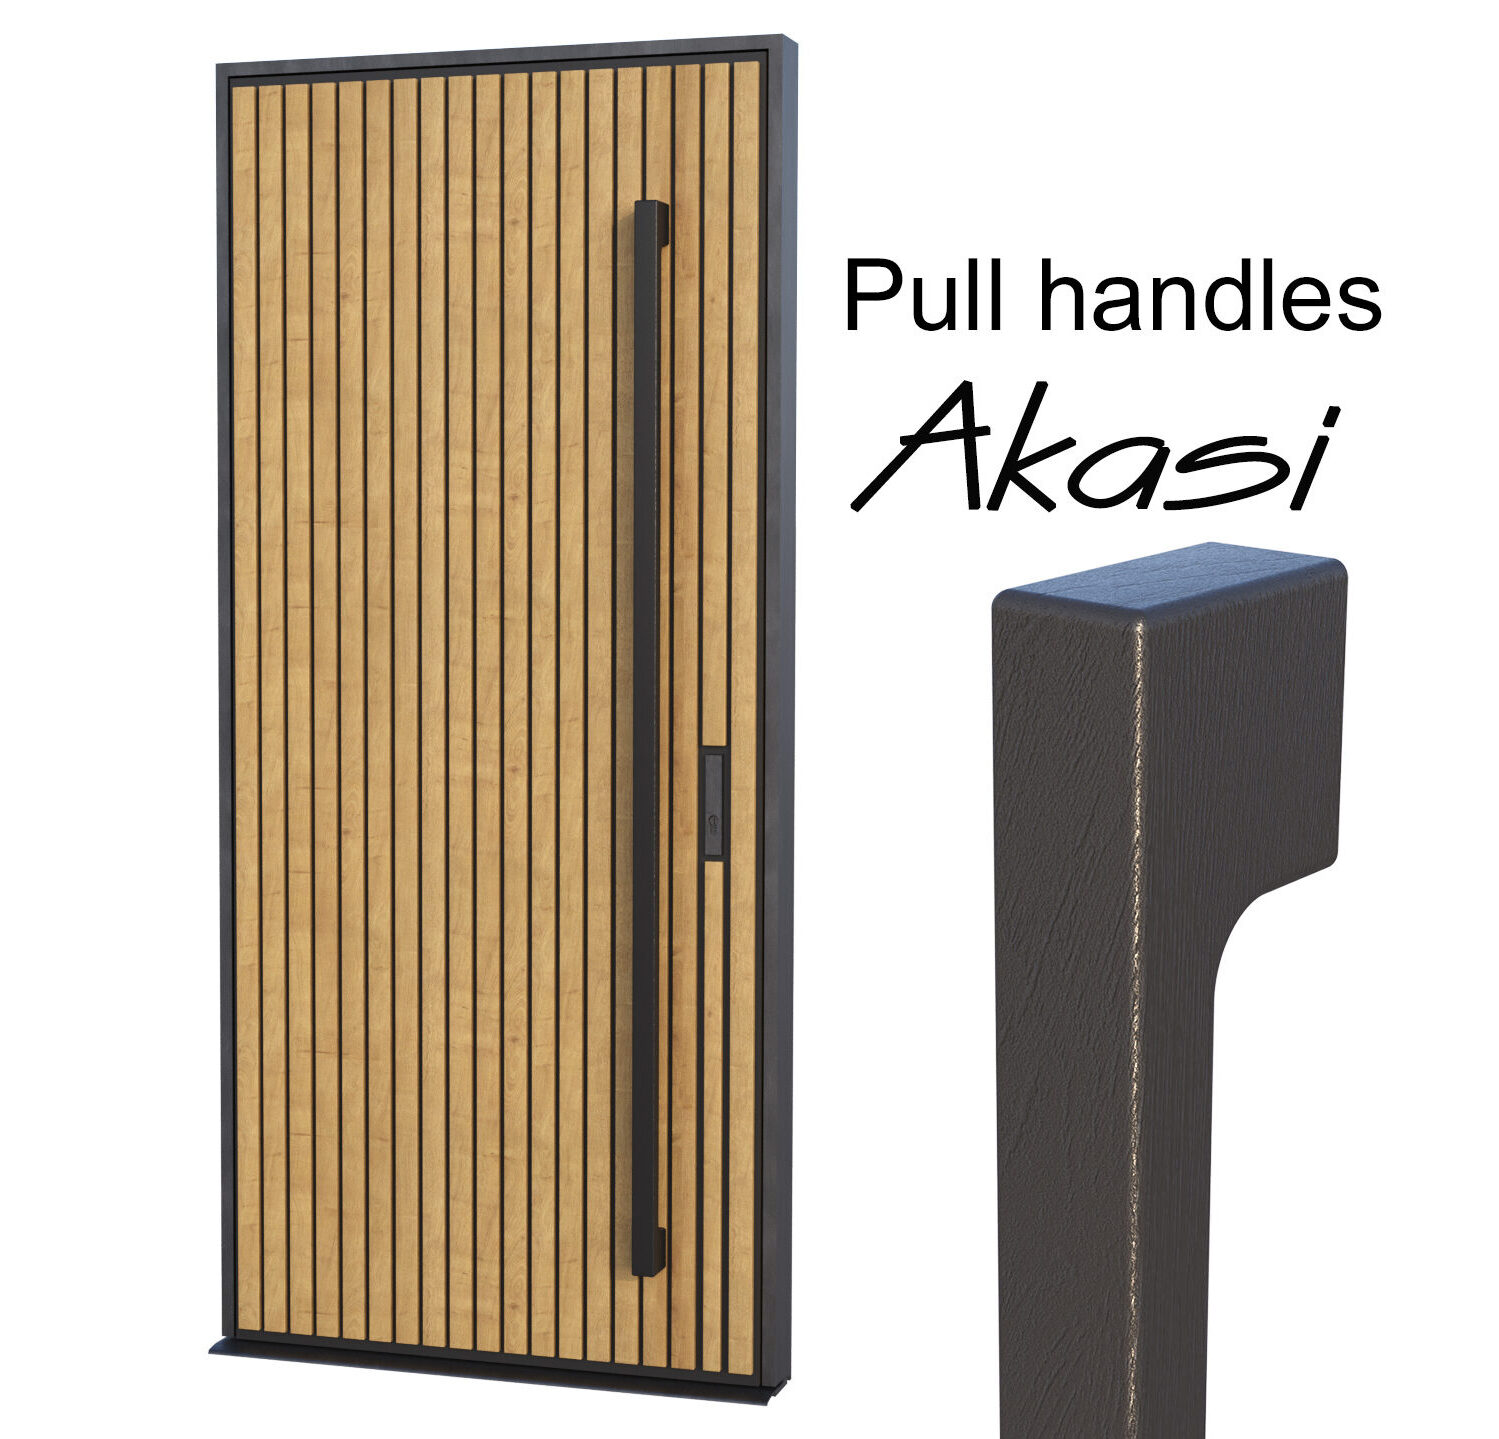 Wooden pull handles AKASI for front door